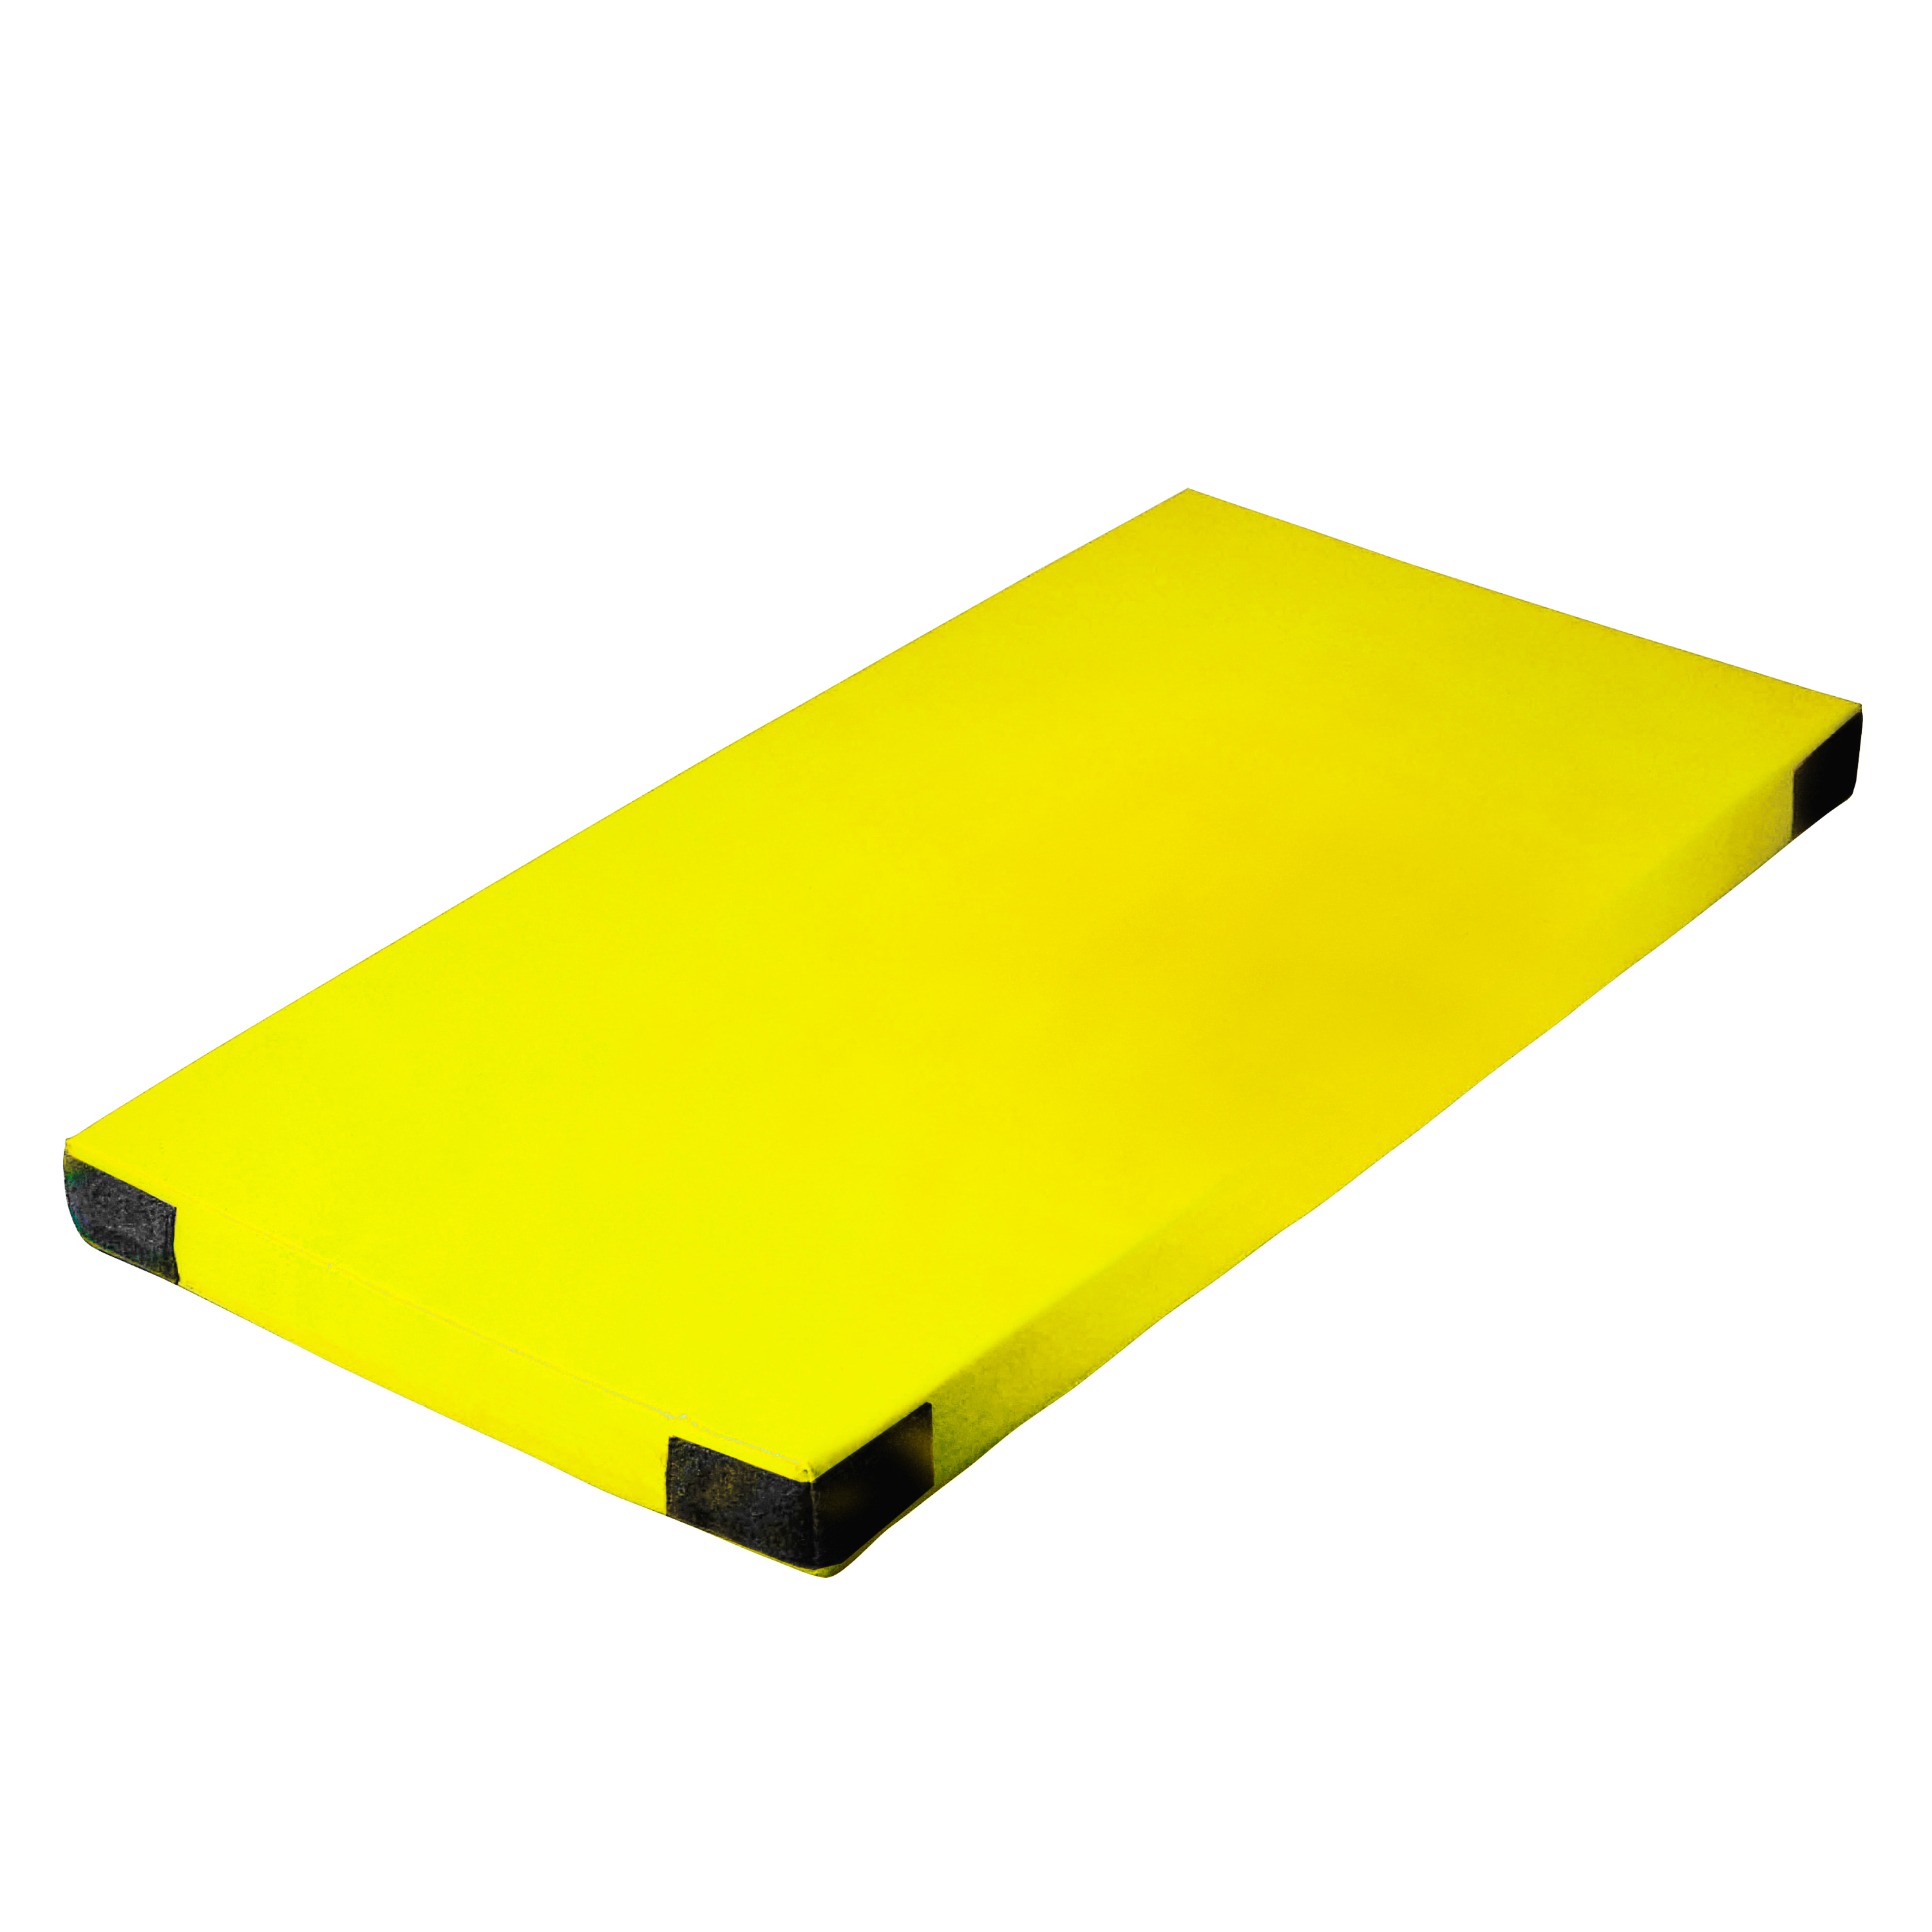 Super-Leichtturnmatte Klettecken 200 x 125 x 6 cm, gelb